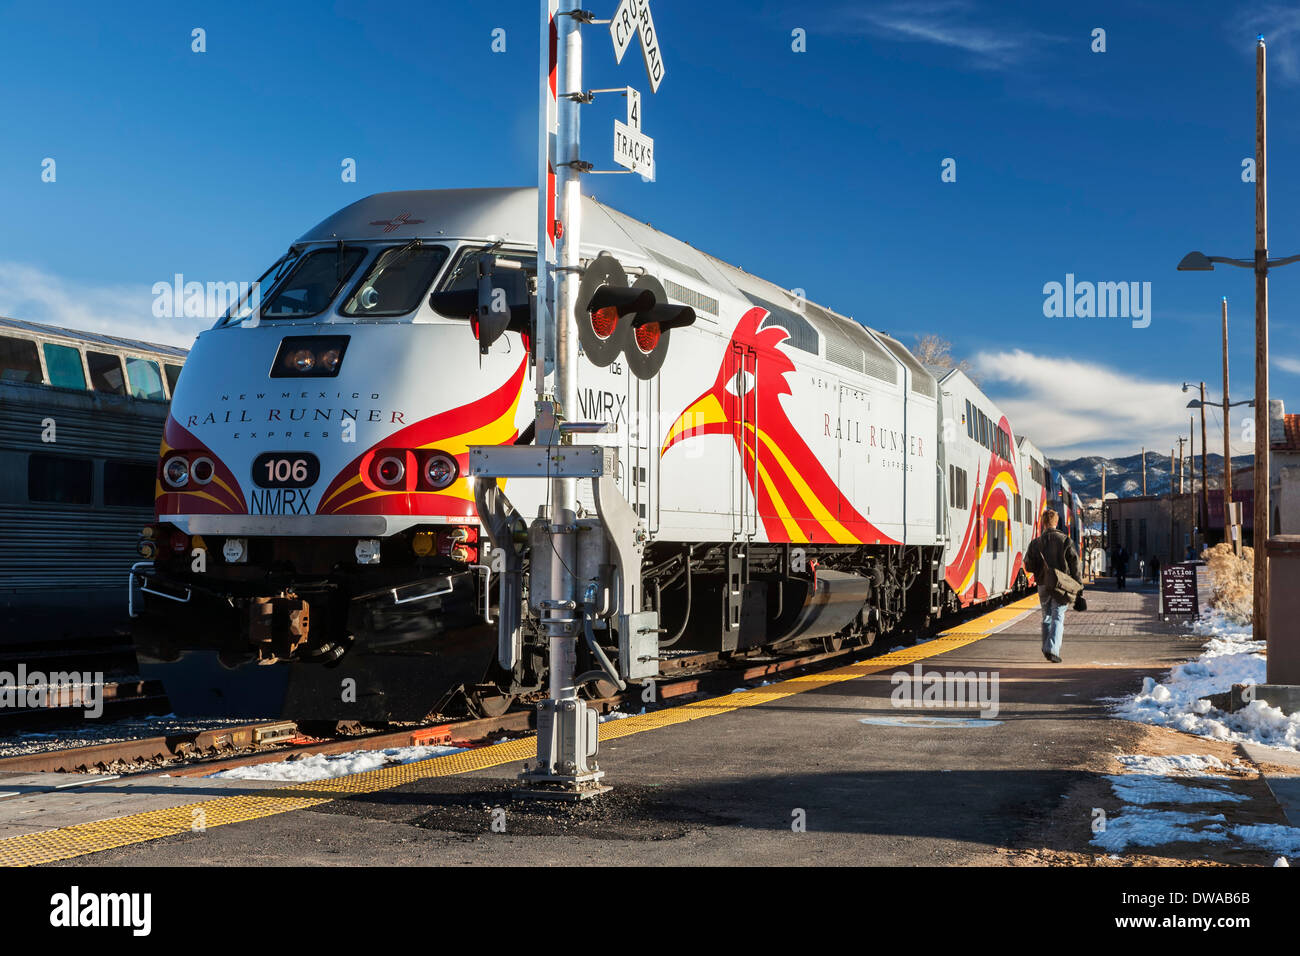 Rail Runner Express at Santa Fe Depot, Santa Fe, New Mexico USA Stock Photo